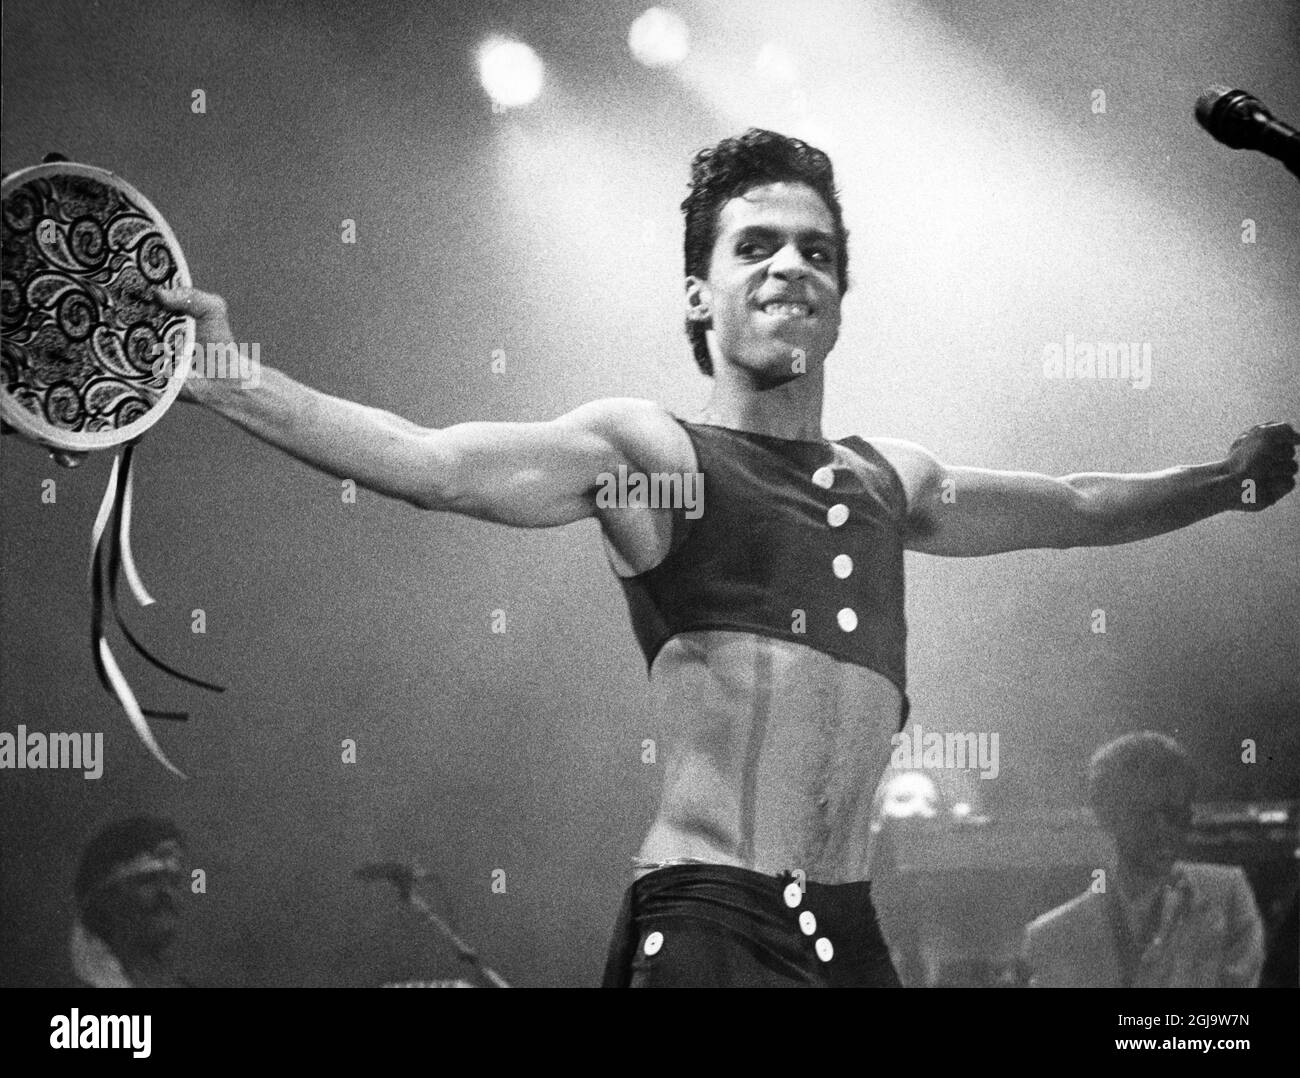 DOSSIER CA 1986 artiste, musicien et chanteur américain Prince lors d'un concert à Copenhague. Selon les médias, Prince est décédé le 21 avril 2016 à sa résidence Paisley Park au Minnesota, aux États-Unis, à l'âge de 57 ans. Foto: Goran Strandberg / Skanereportage / TT / Kod: 36100 Banque D'Images